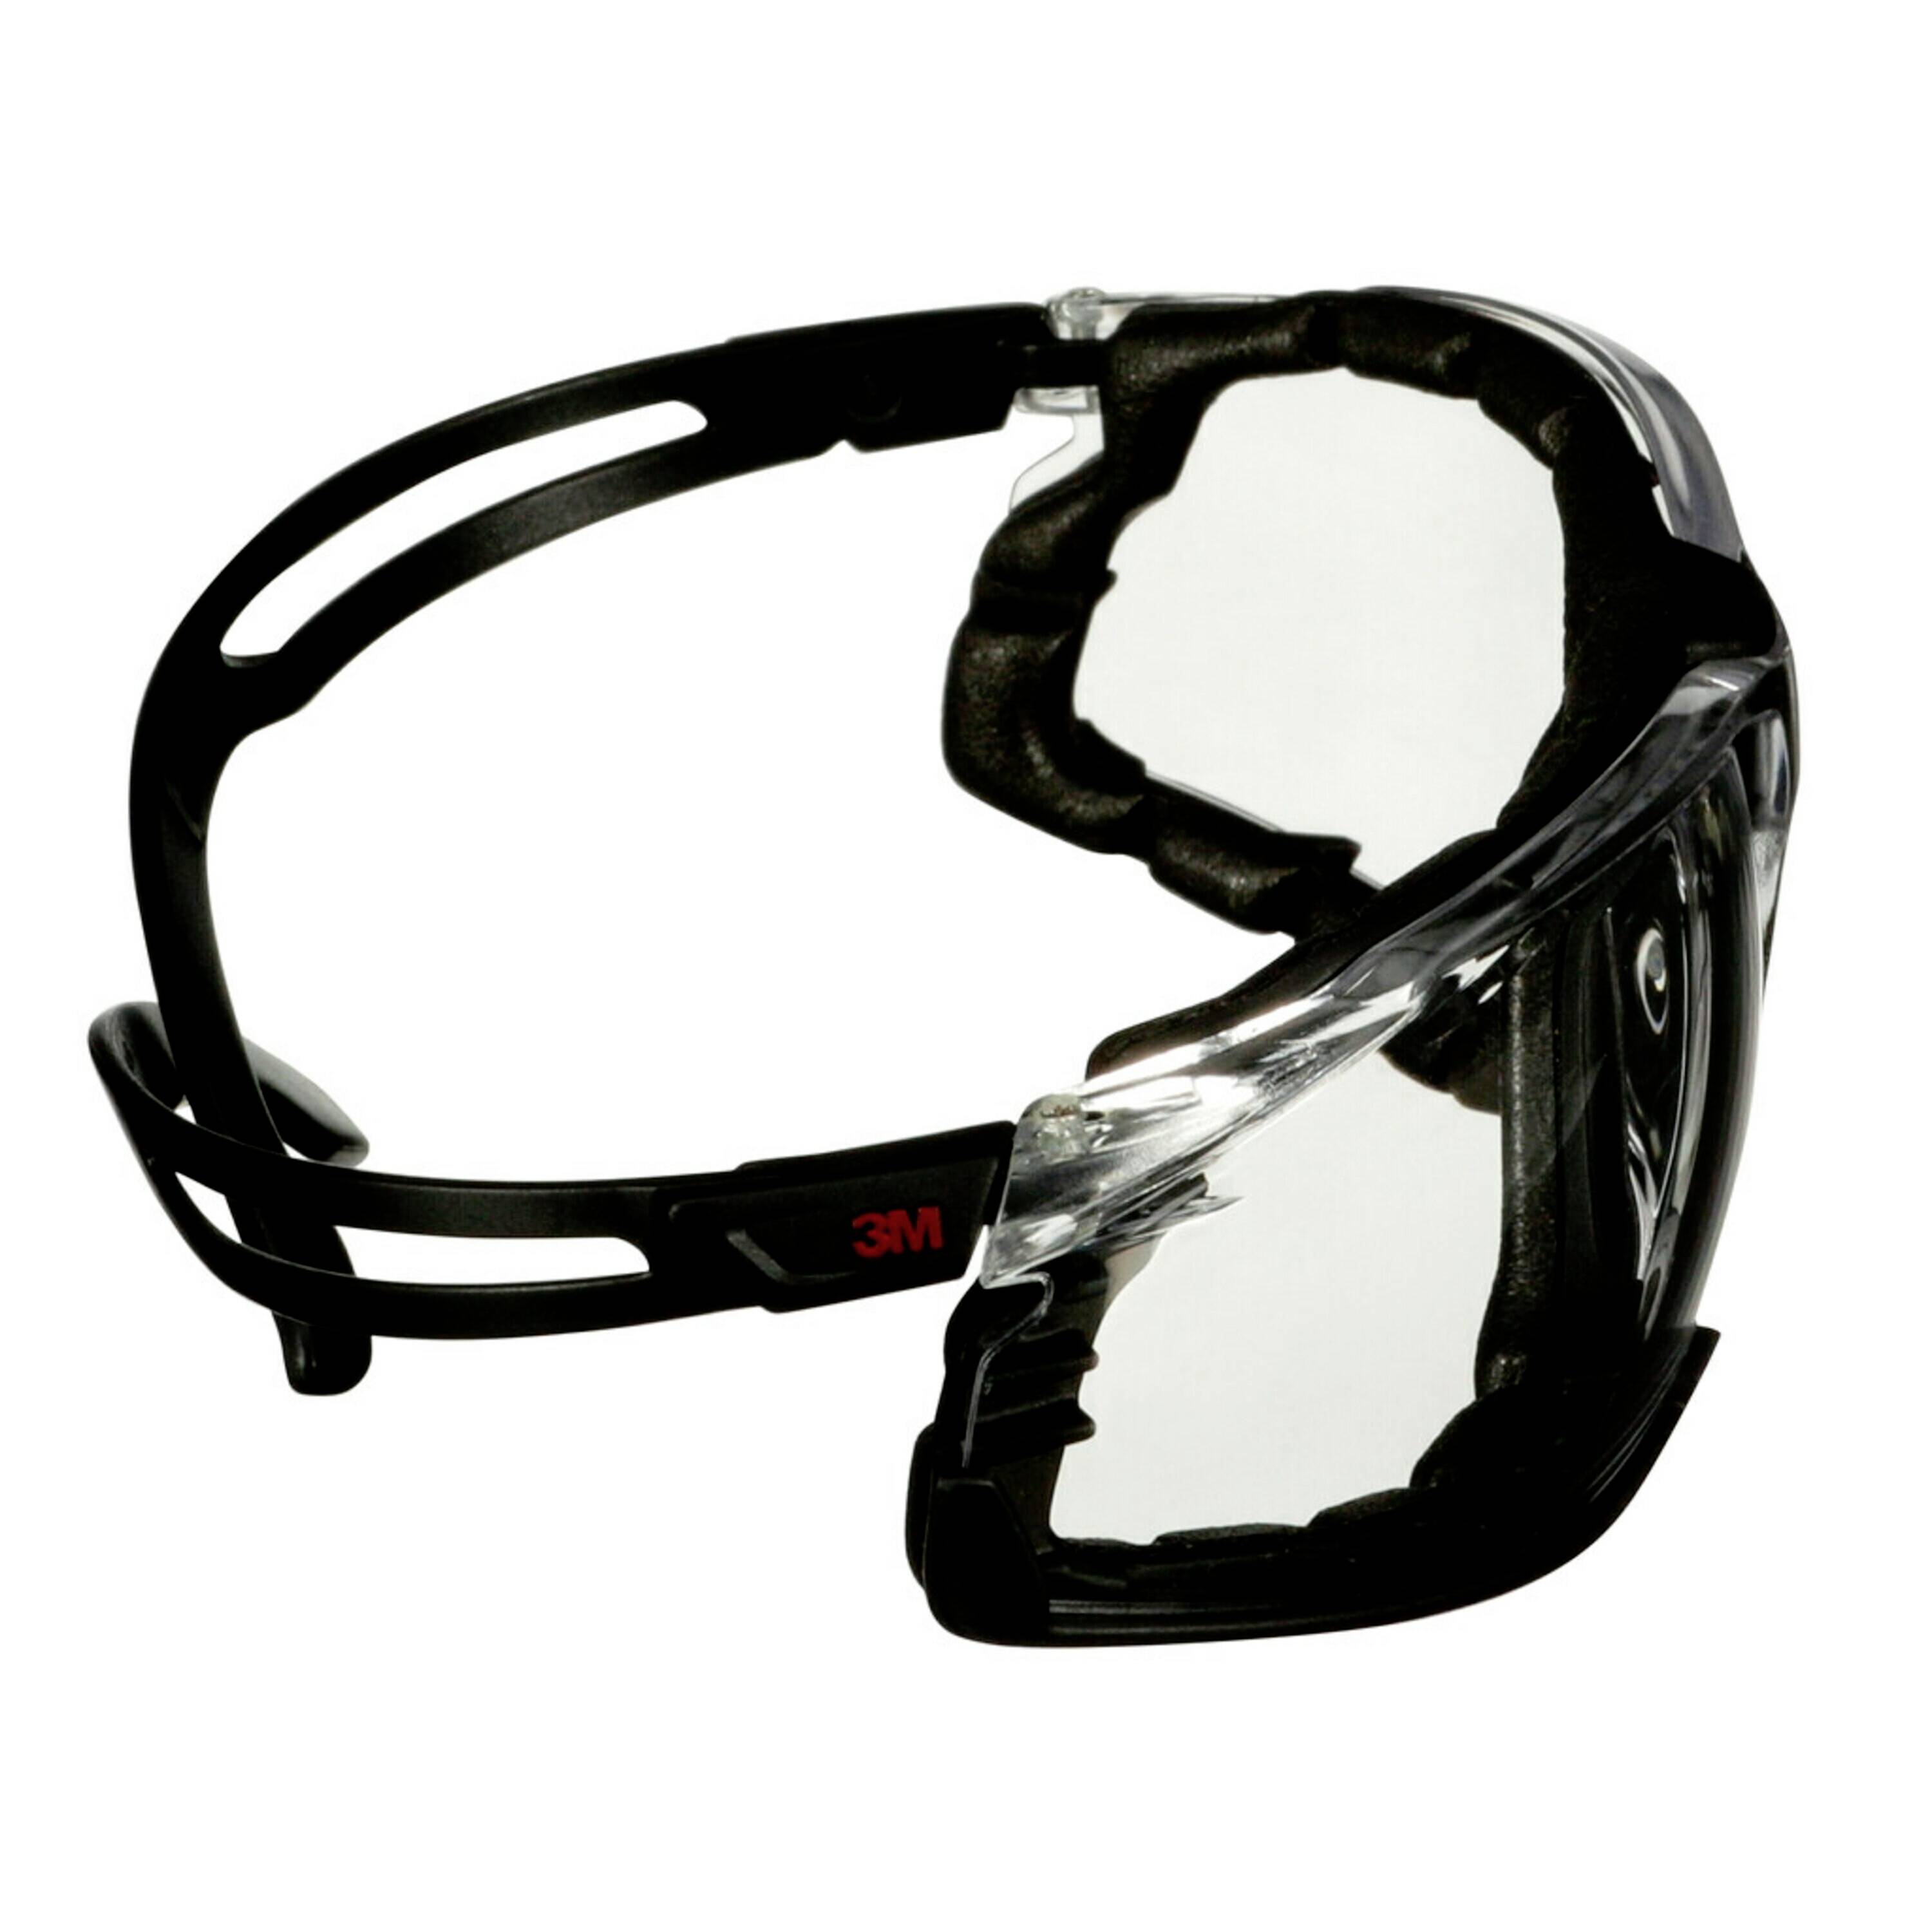 3m Securefit Sf501sgaf Blk Fm Safety Glasses Anti Fog Coating Black